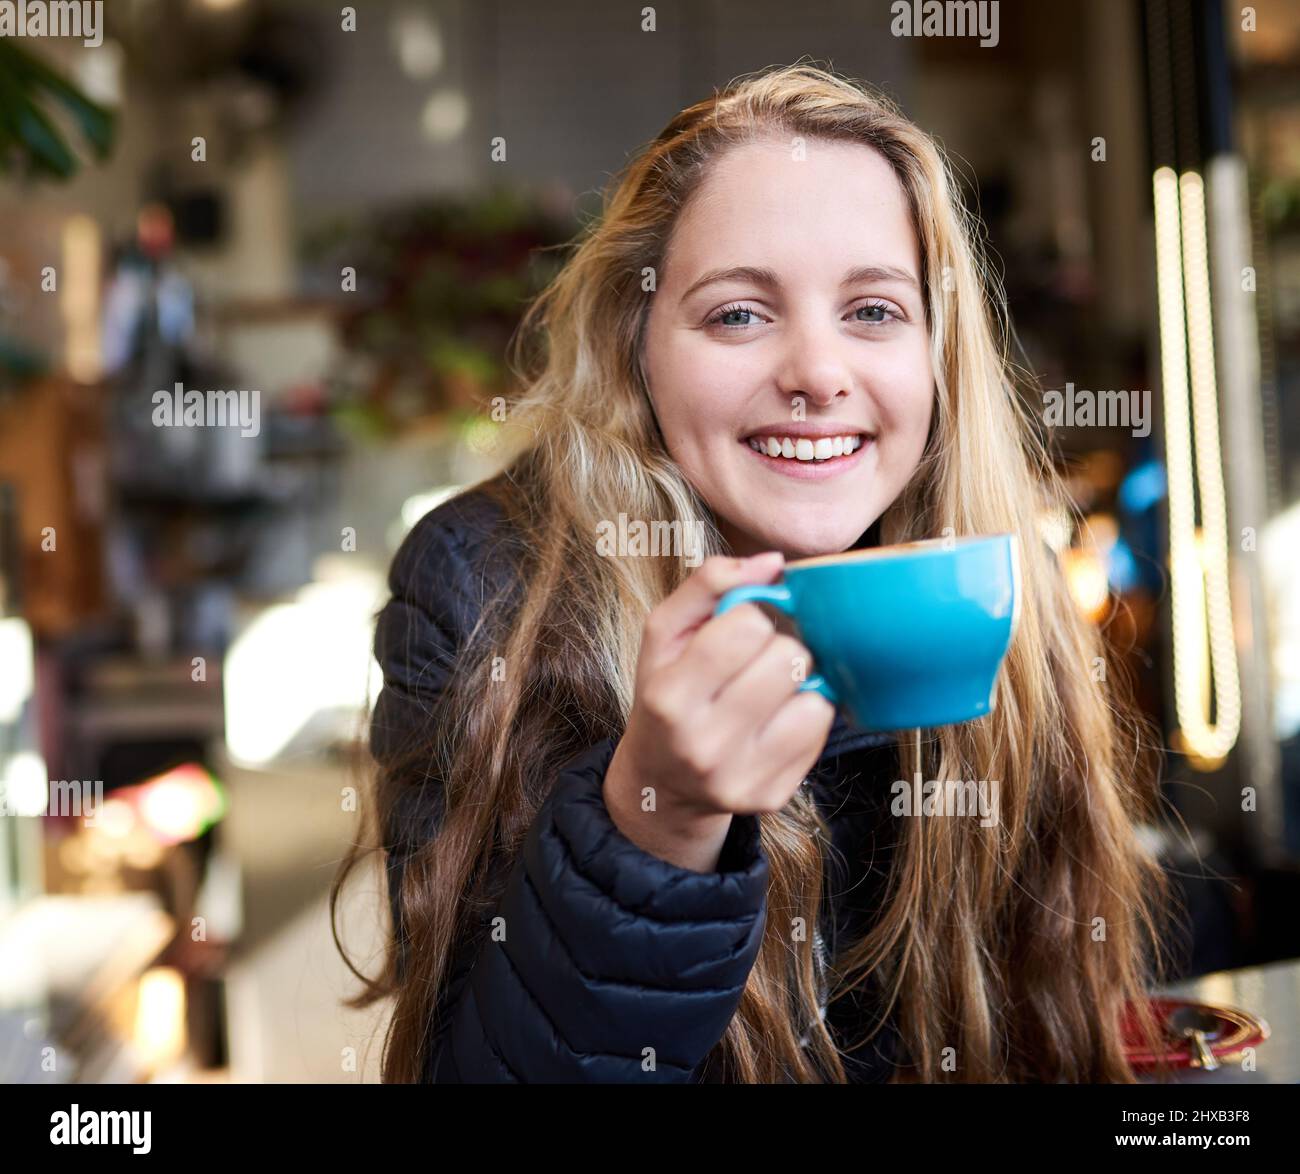 Il caffè mi mantiene rinfrescato e rifornito. Ritratto di una giovane donna attraente che si gode un cappuccino in una caffetteria. Foto Stock